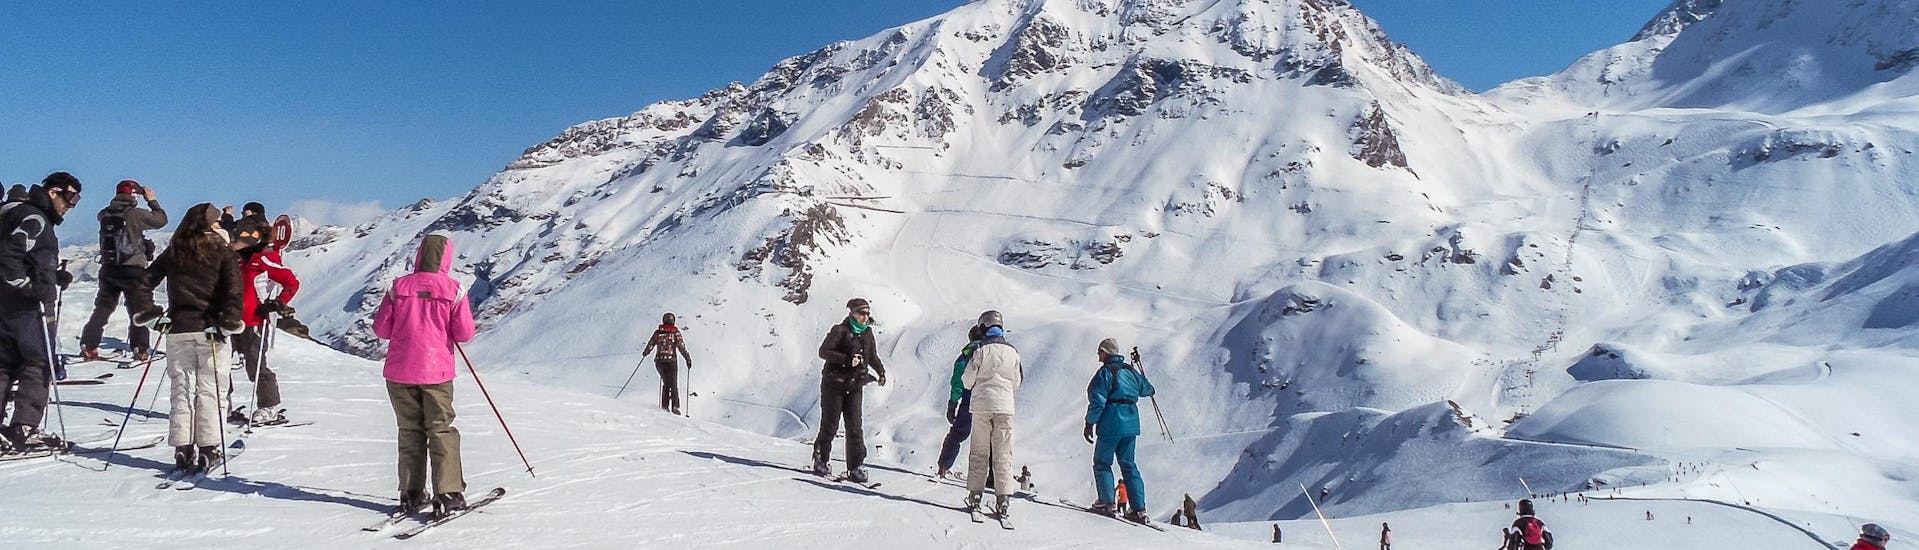 Adultes et enfants skiant dans la station de ski de Les Arcs.